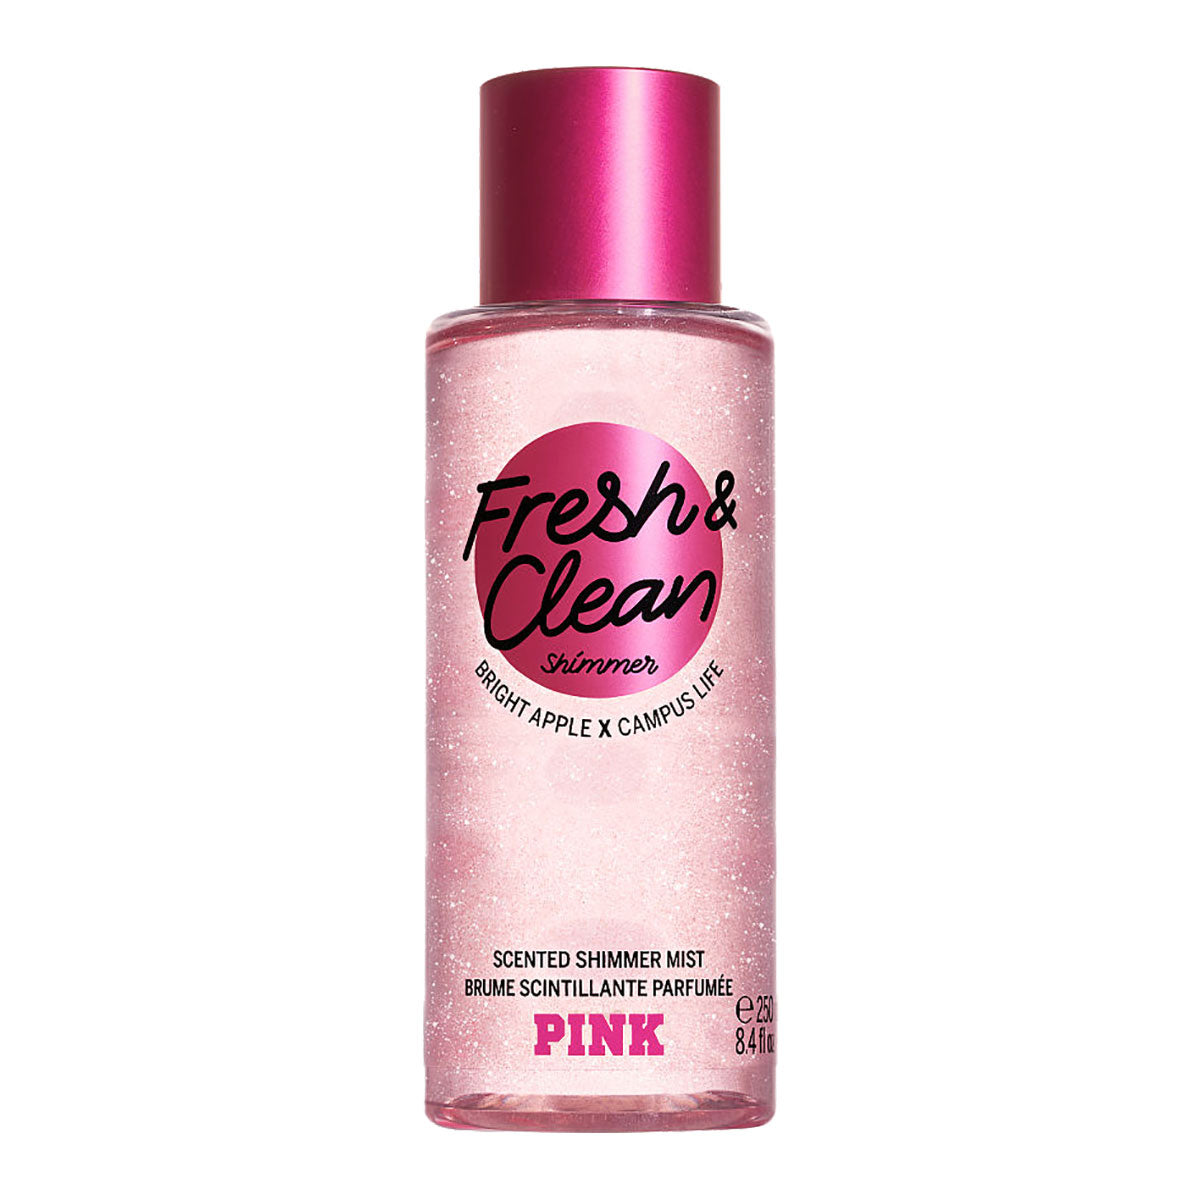 Victoria's Secret Pink Fresh & Clean Shimmer Body Mist